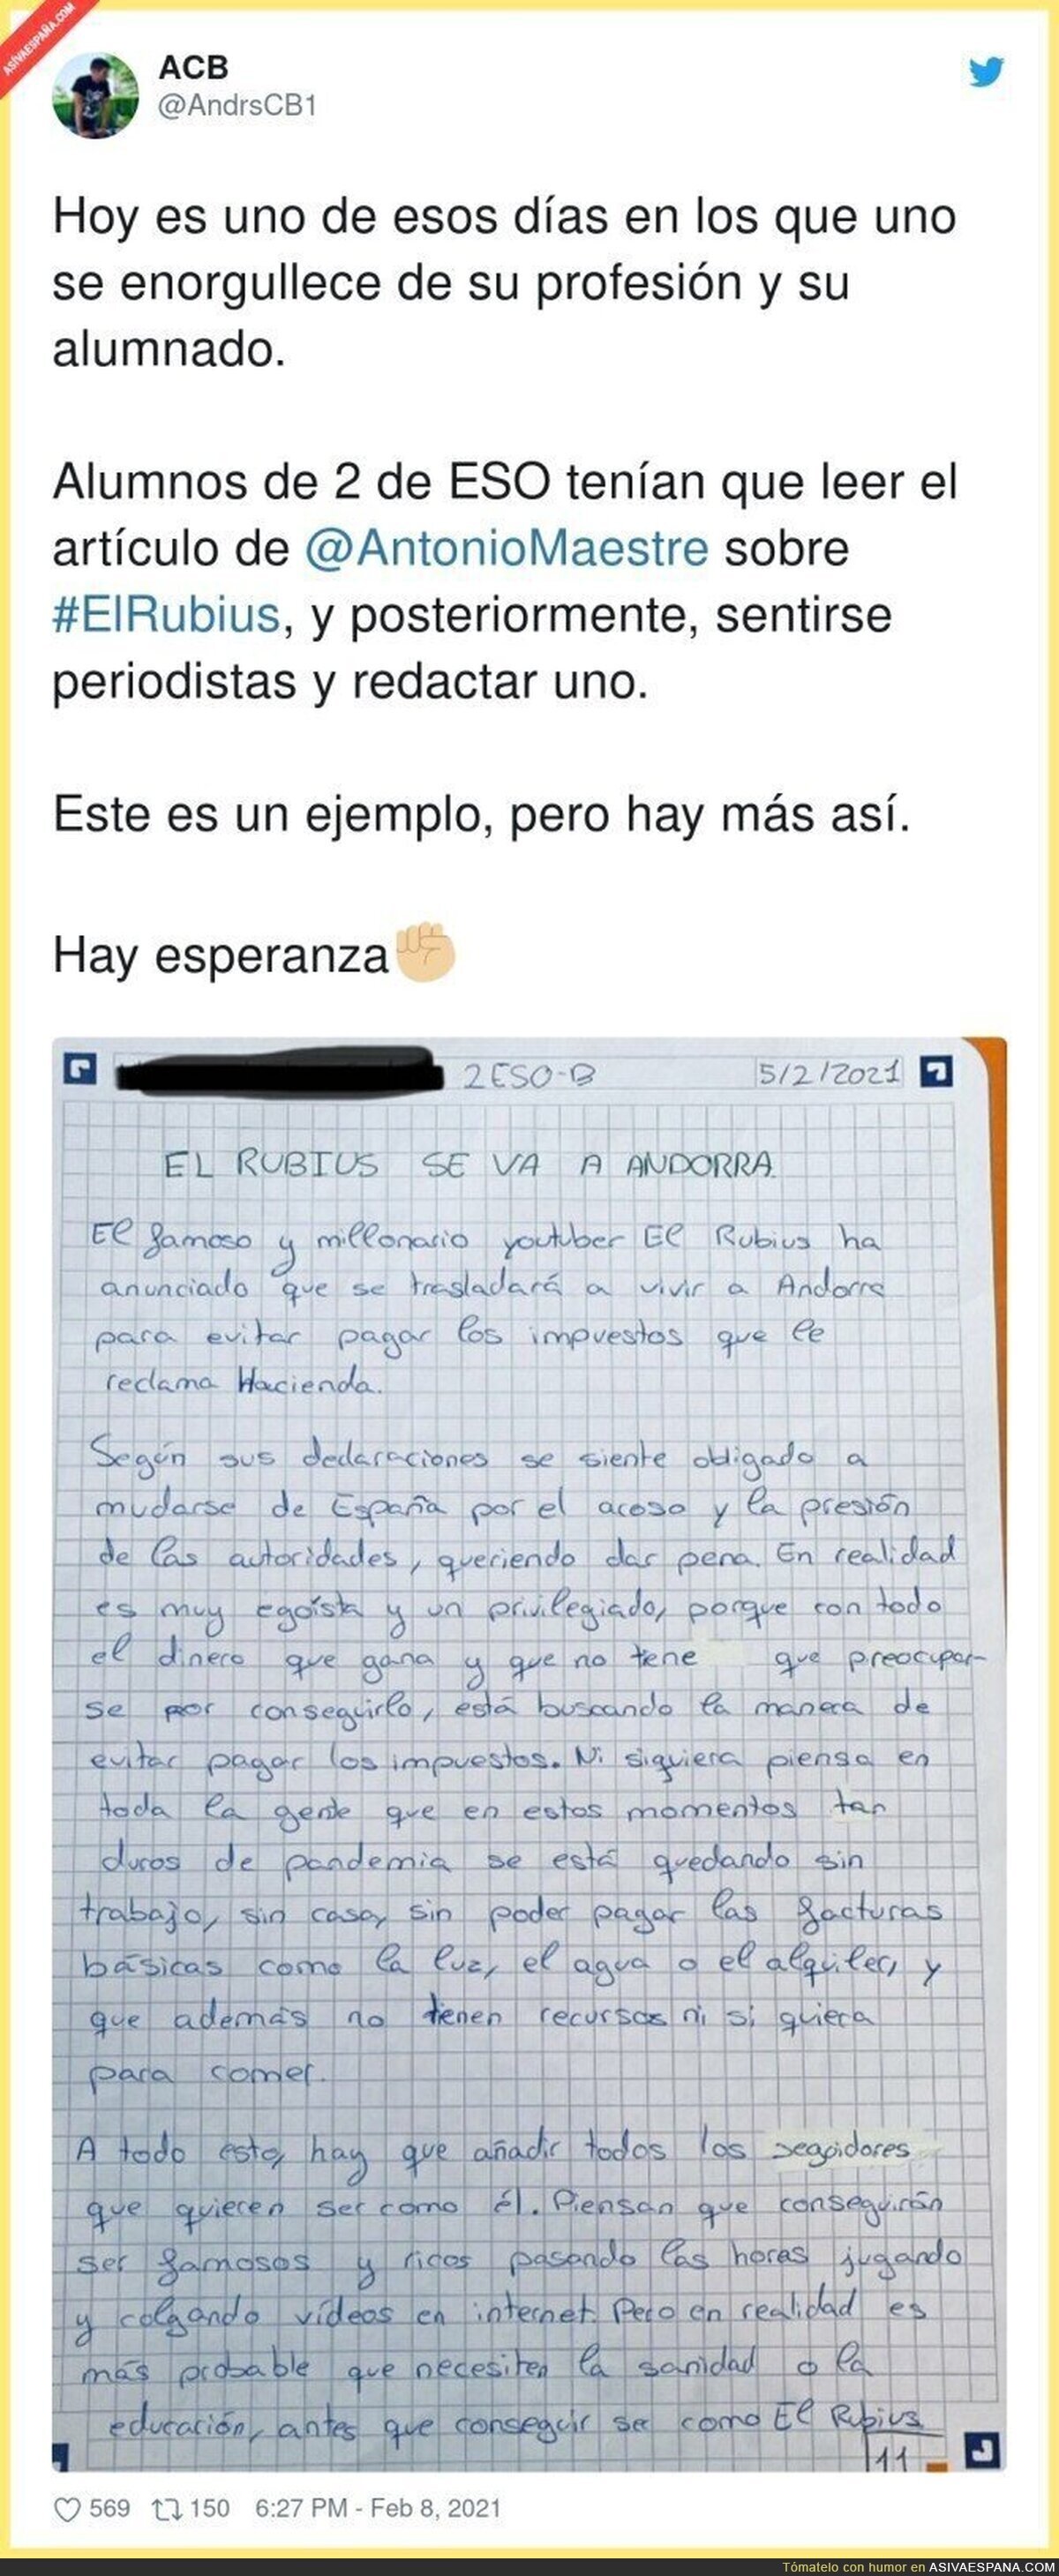 La carta que se ha hecho viral sobre un alumno de 2 de ESO sobre el Rubius y su fuga a Andorra